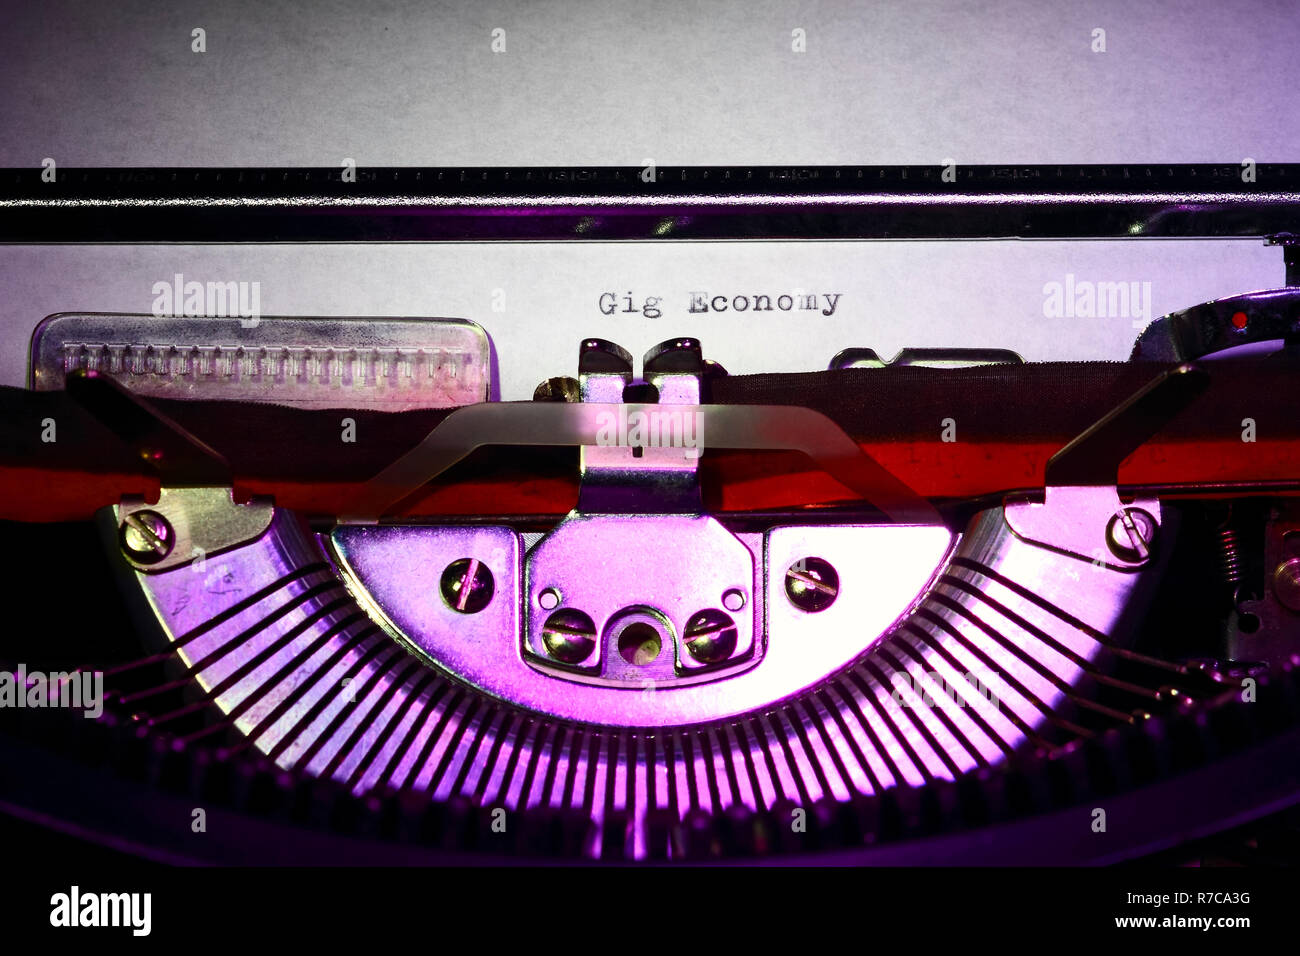 Vintage Schreibmaschine mit den Worten gig Wirtschaft auf einen Brief drucken Stockfoto